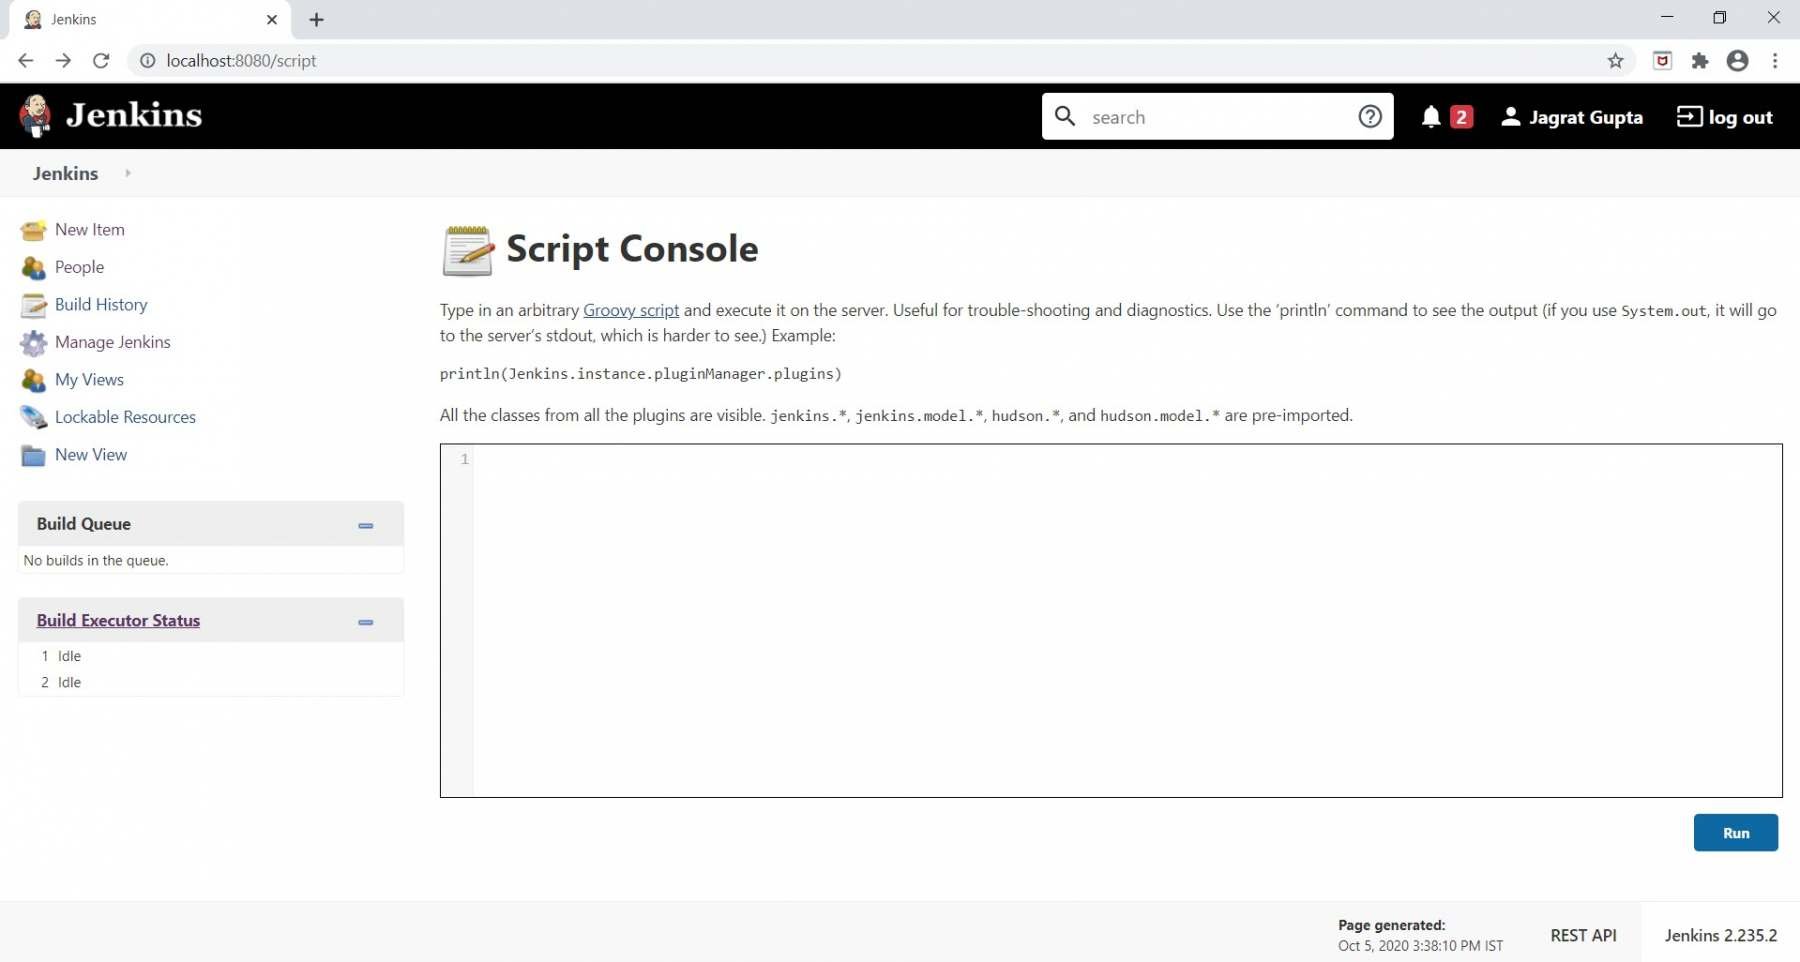 Script Console section